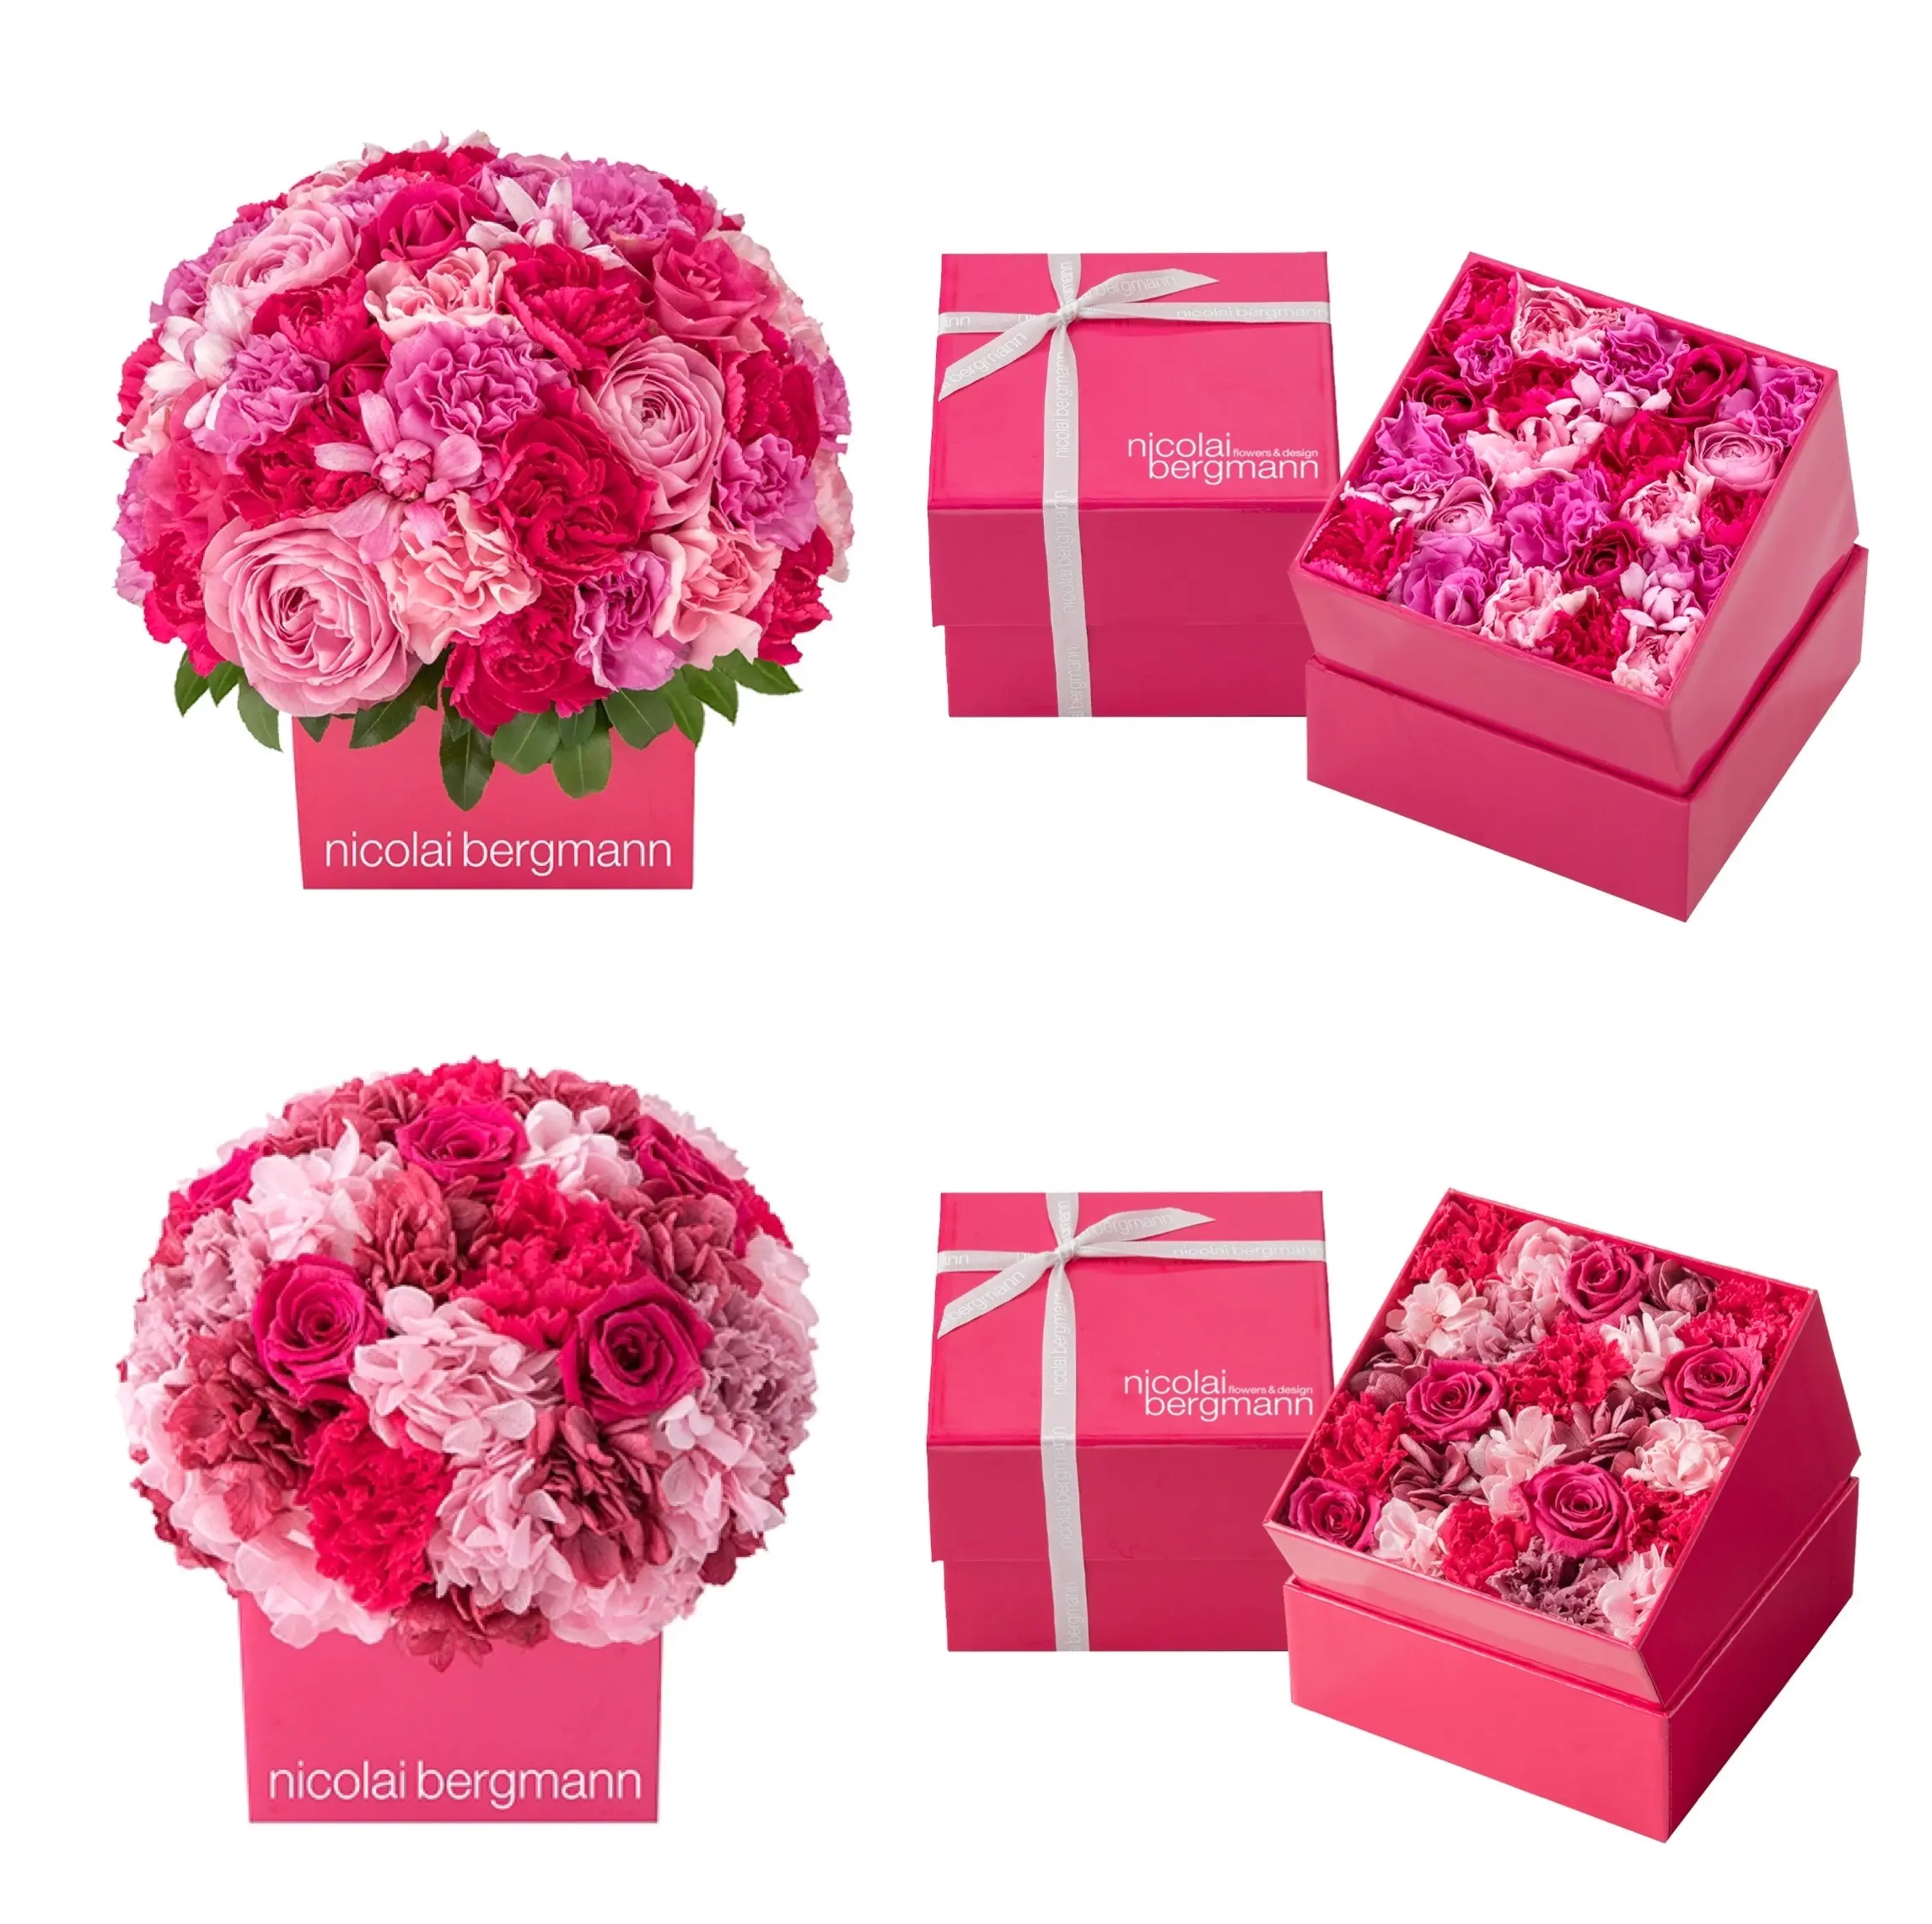 お母さんに気持ちも花やぐビビッドピンクを贈ろう ニコライ バーグマン 母の日限定フラワーボックス発売中 ファッション コーディネート 代 Daily More